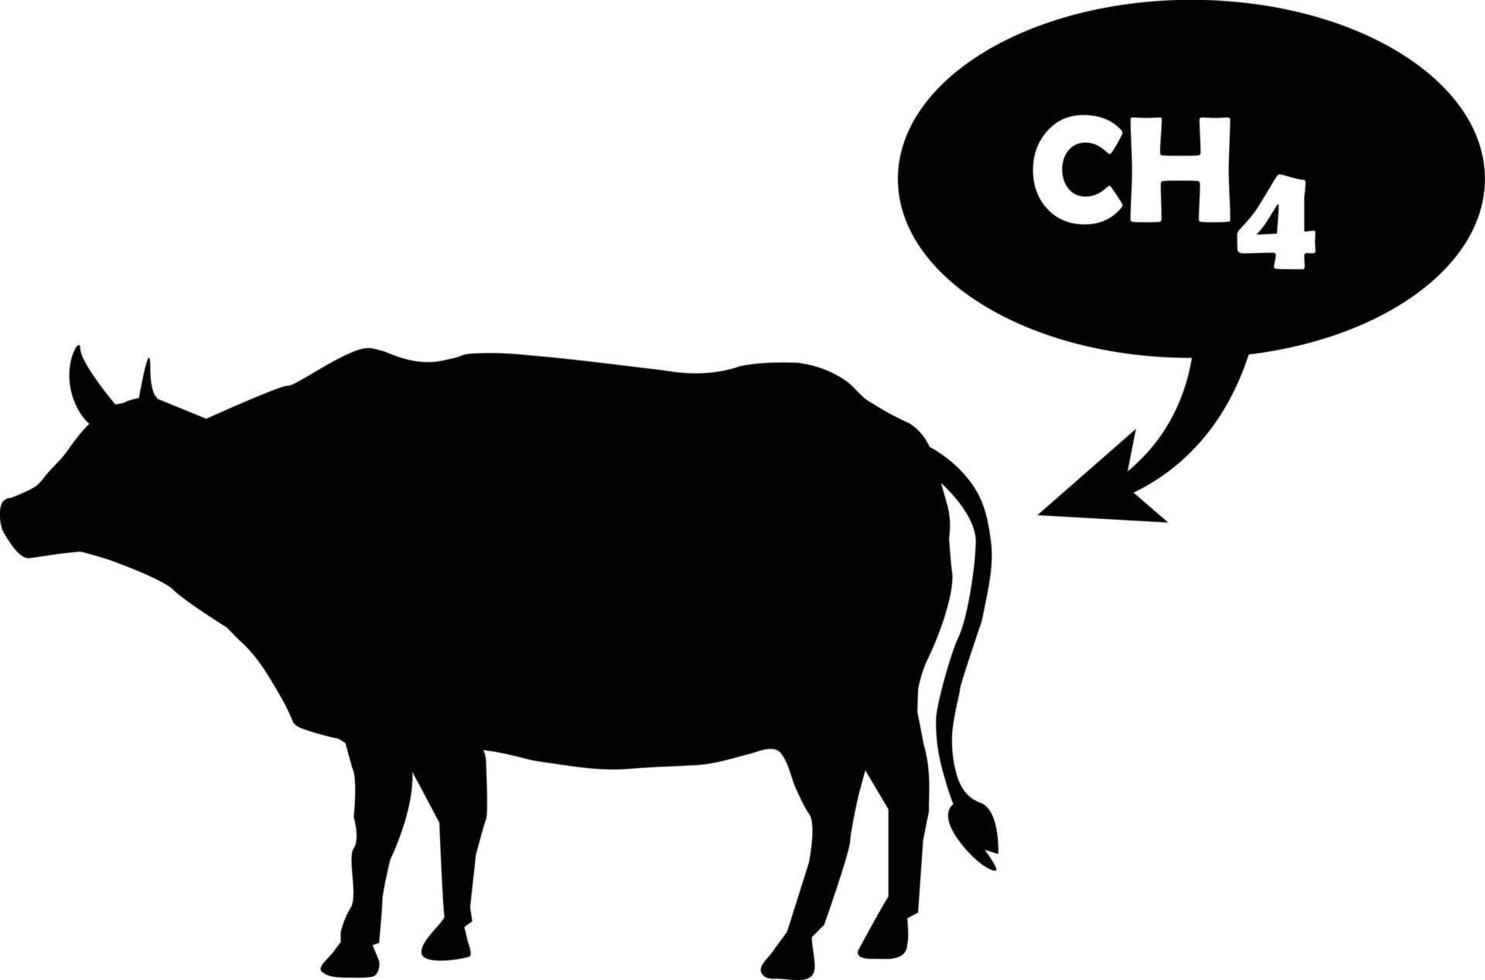 metano é liberado pela vaca. sinal de emissões ch4. emissões de metano do conceito de gado. estilo plano. vetor